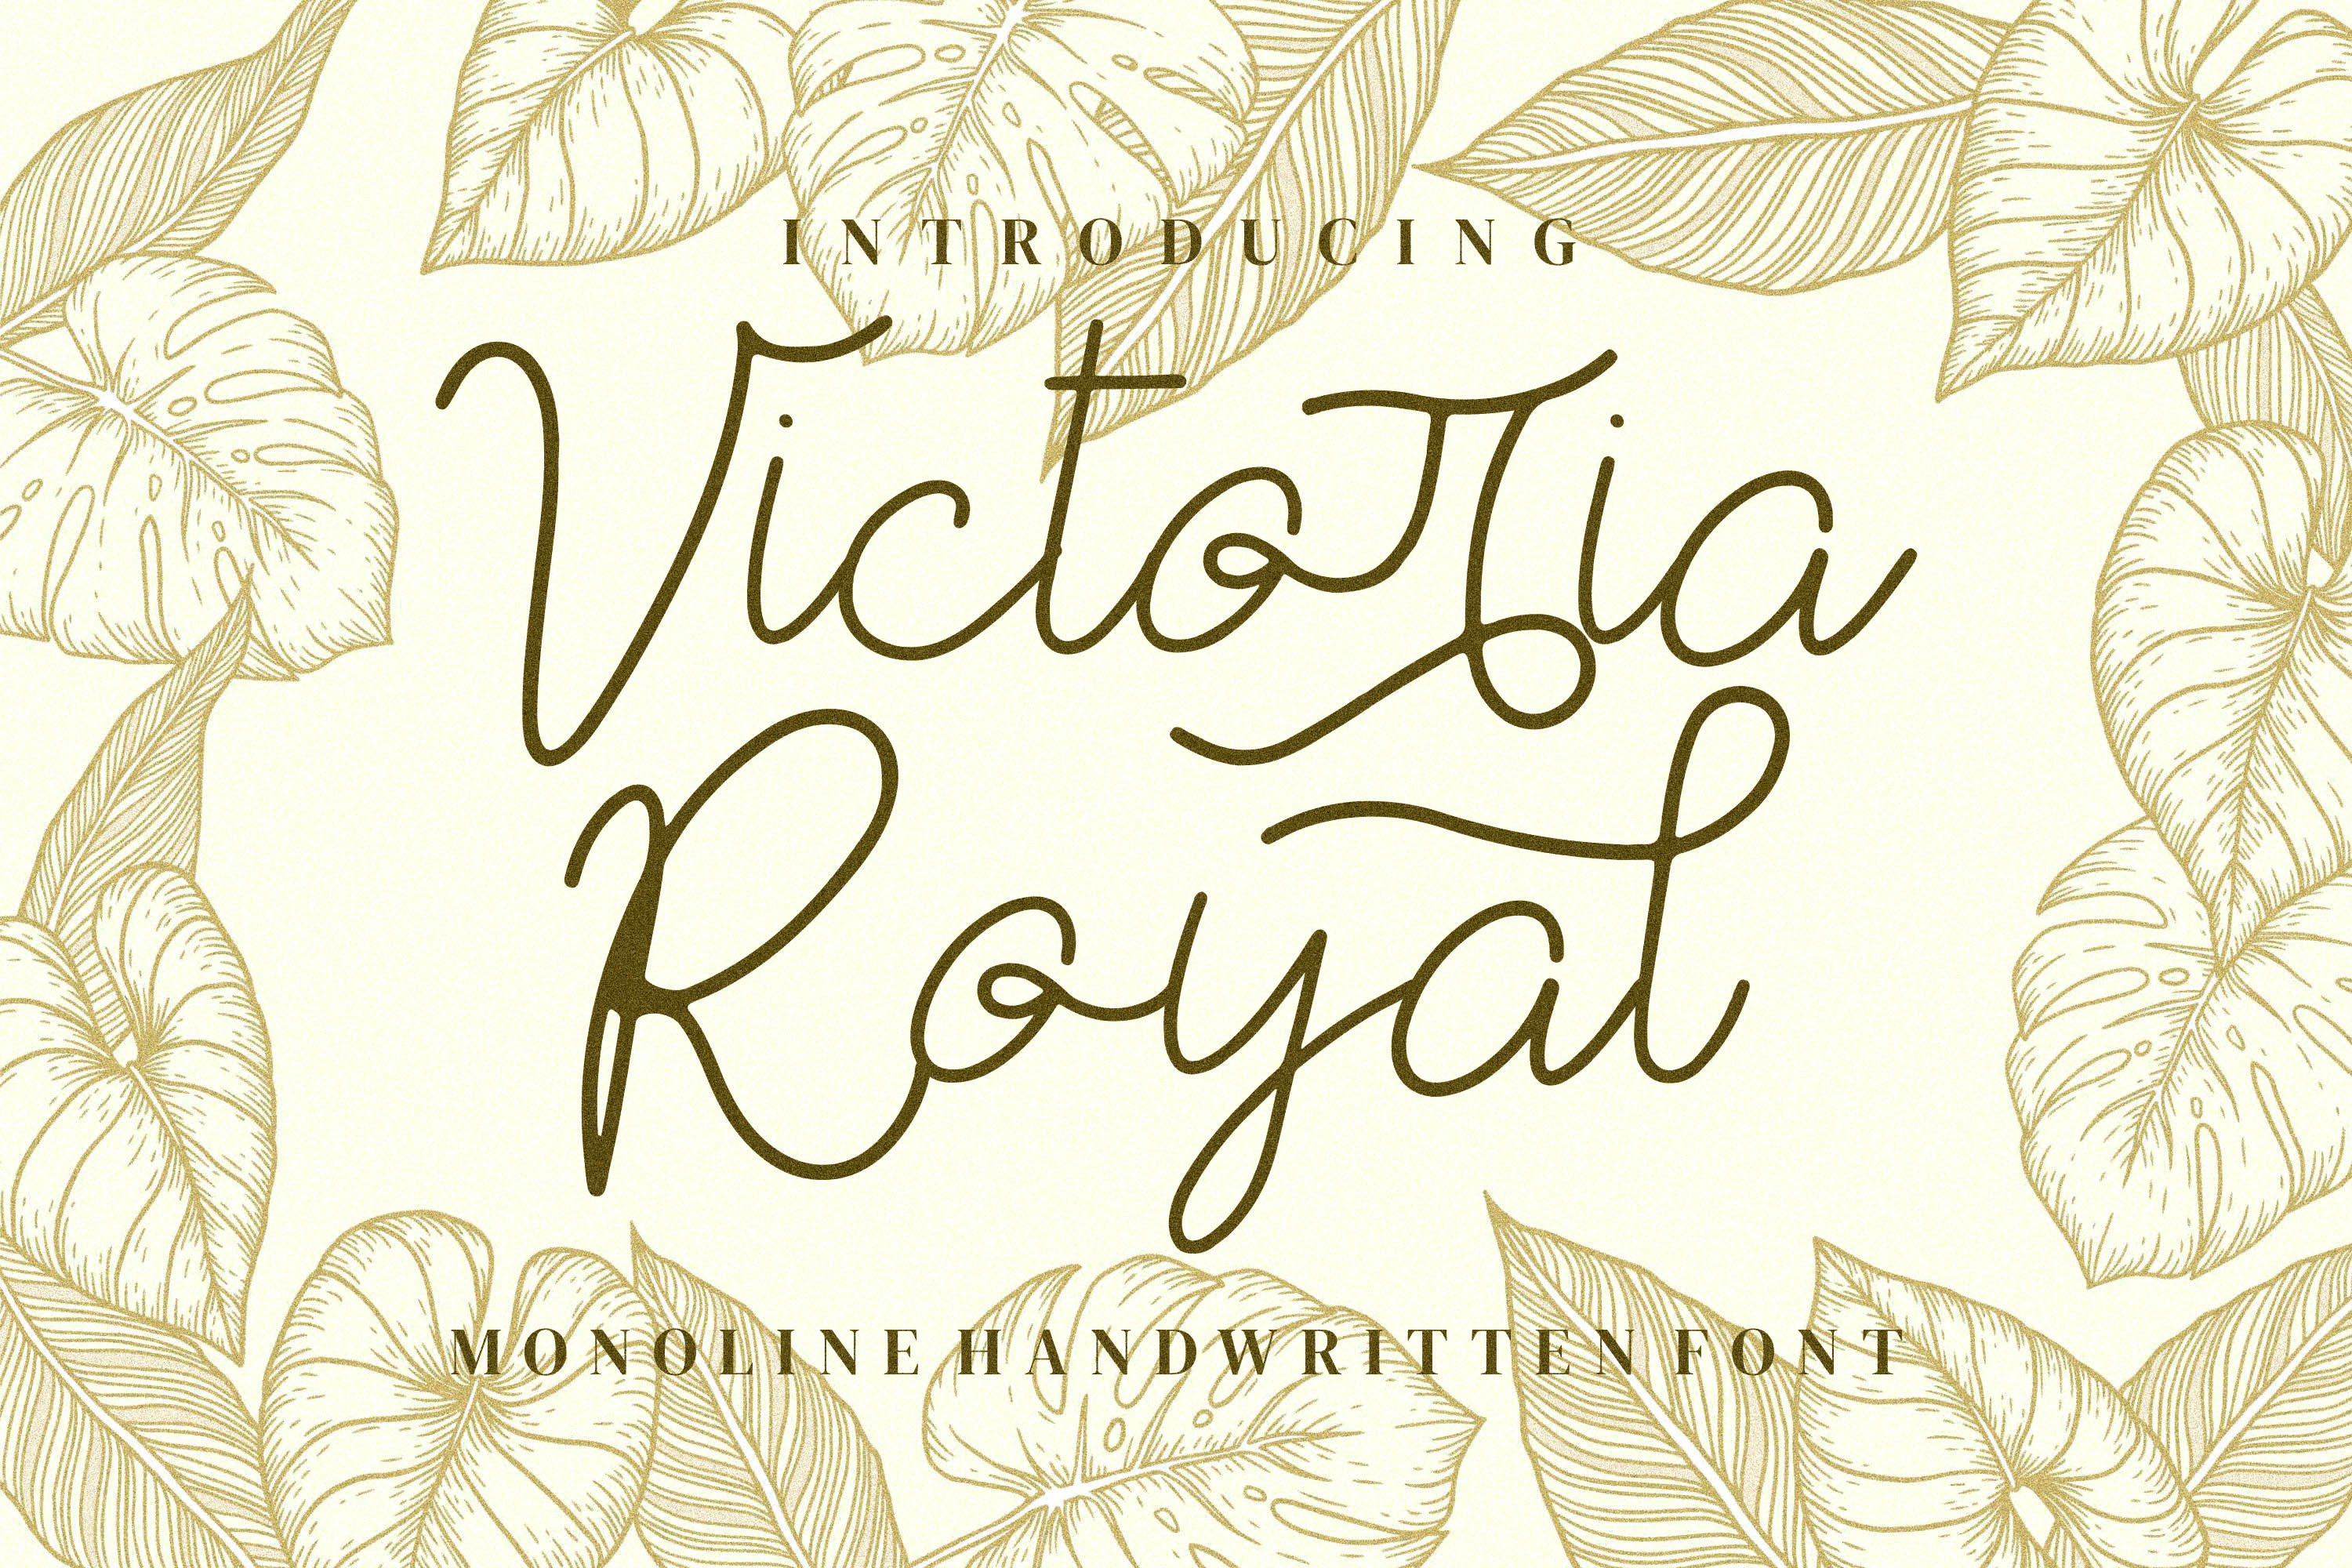 Victoria Royal